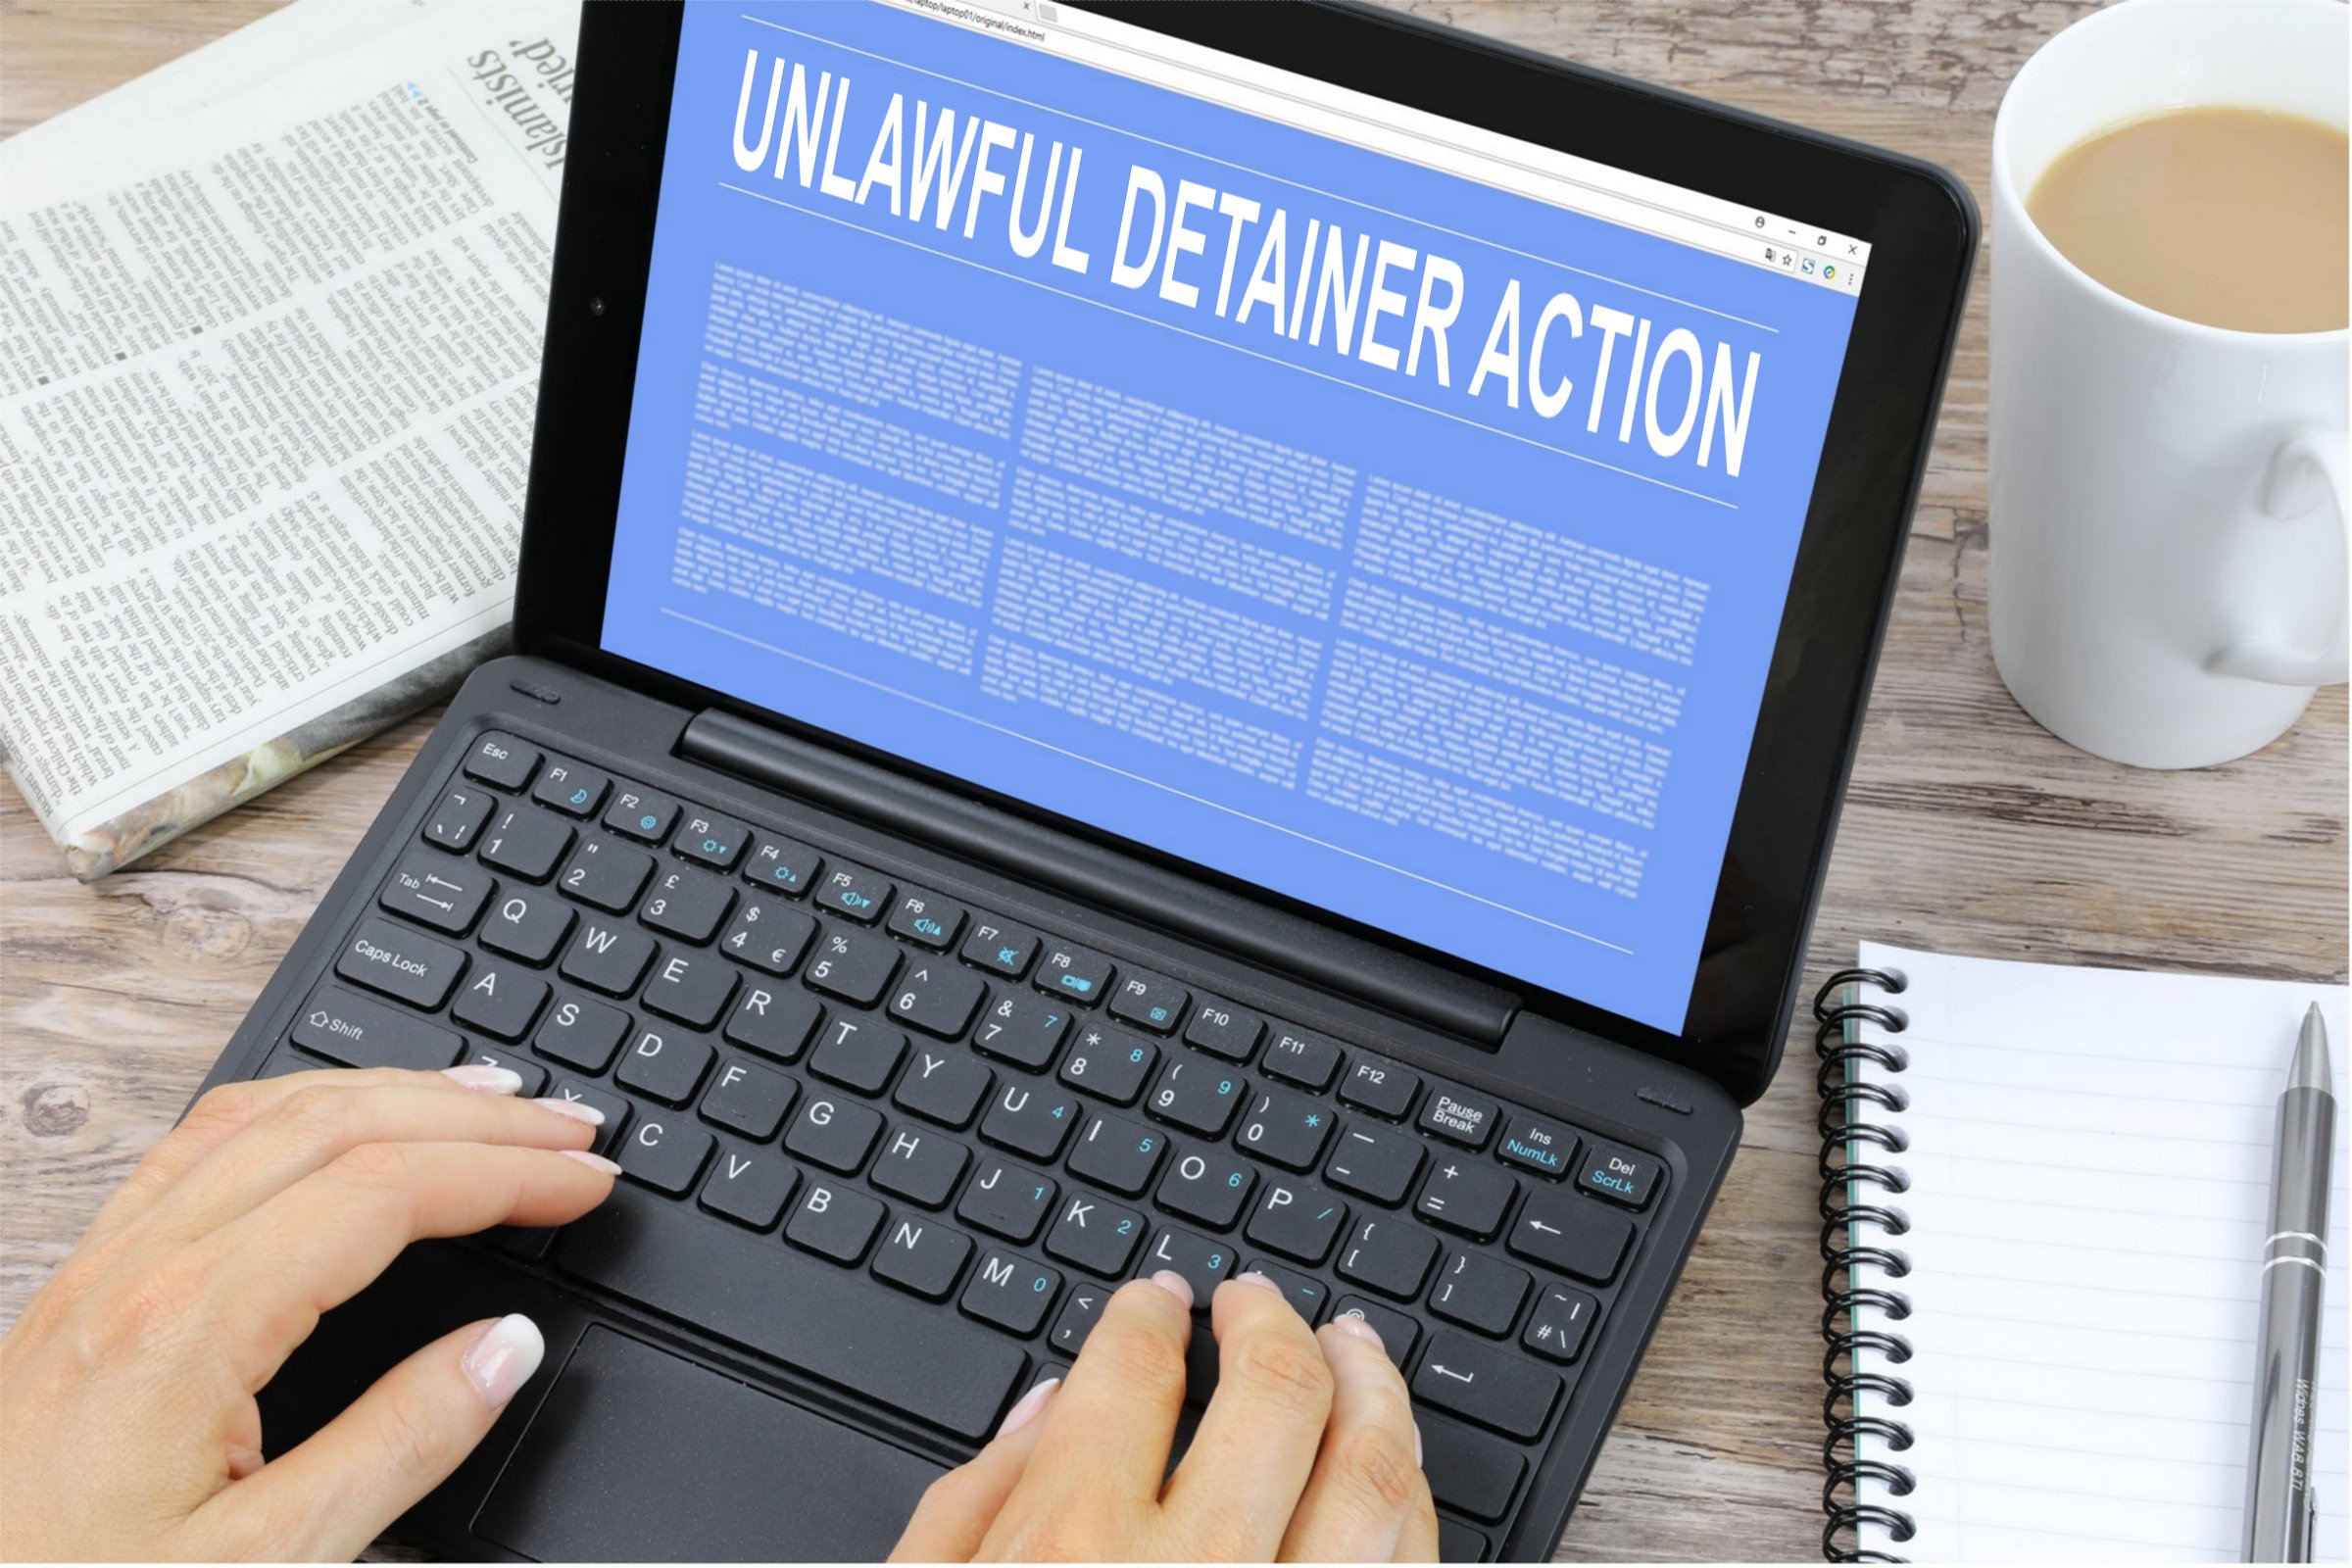 Unlawful Detainer Action